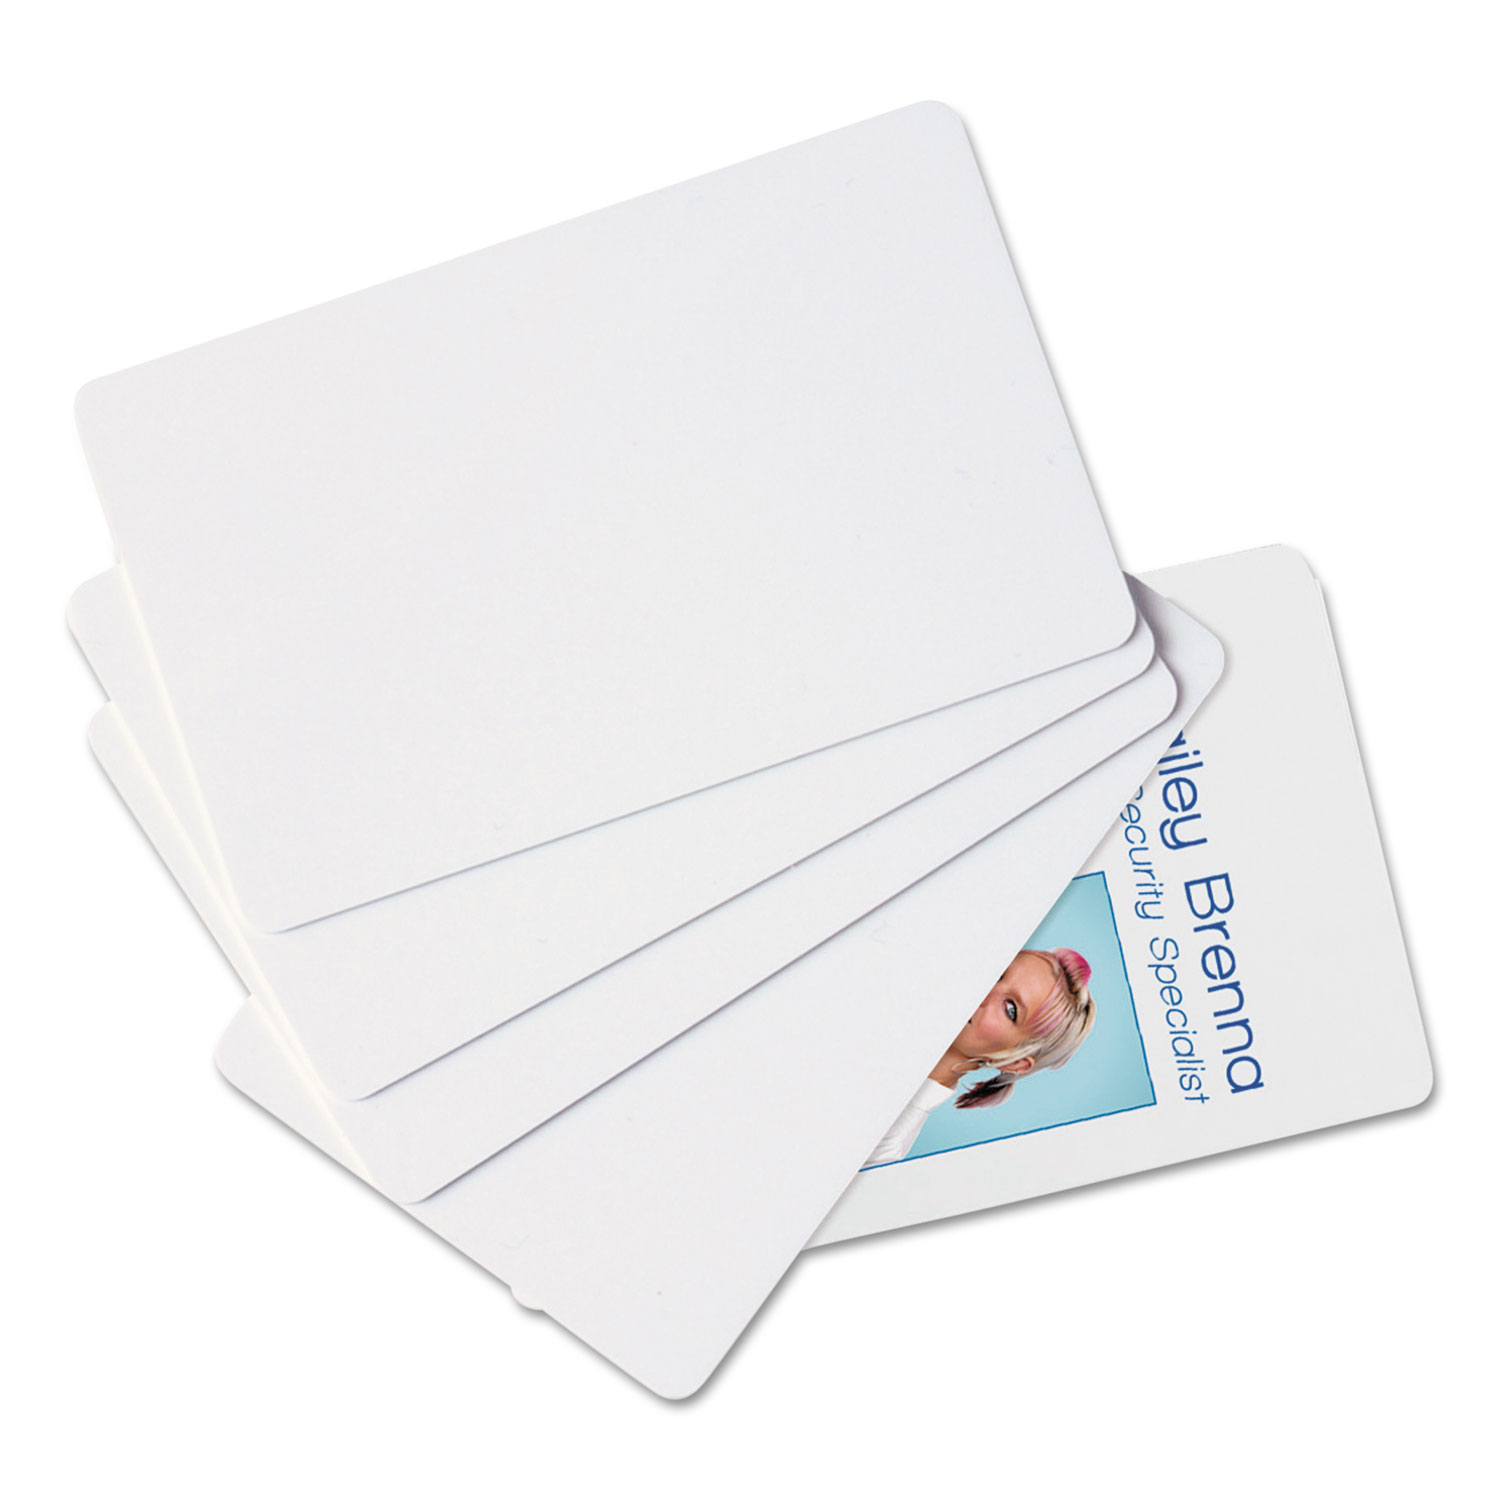 SICURIX Blank ID Card, 2 1/8 x 3 3/8, White, 100/Pack